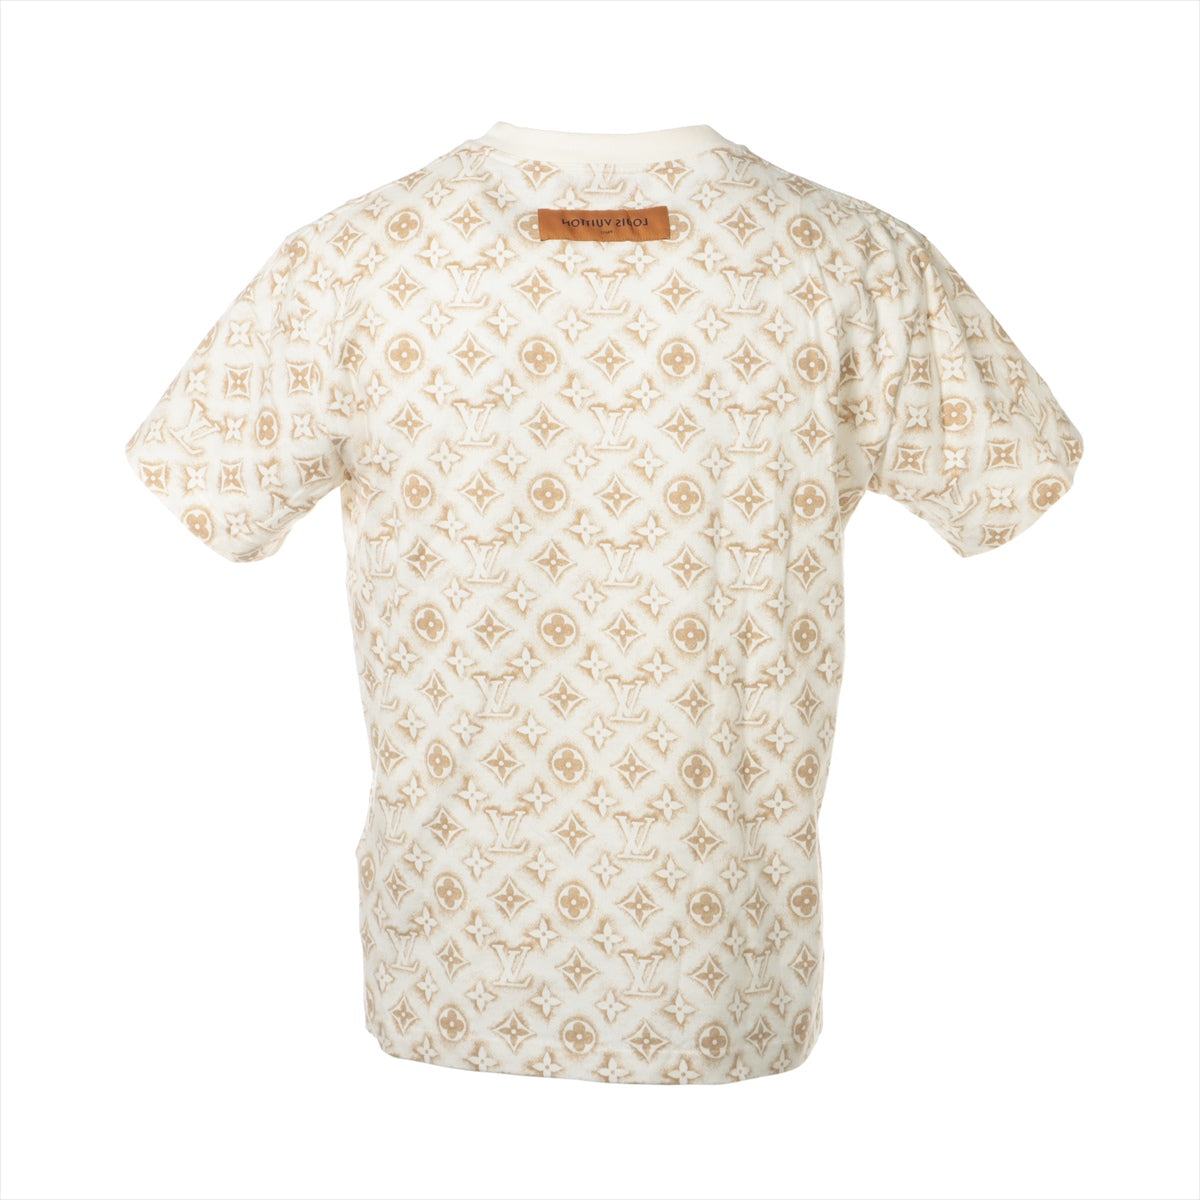 Louis Vuitton 23AW Cotton T-shirt S Men's Beige x white  Monogram INSIDE OUT RM232M